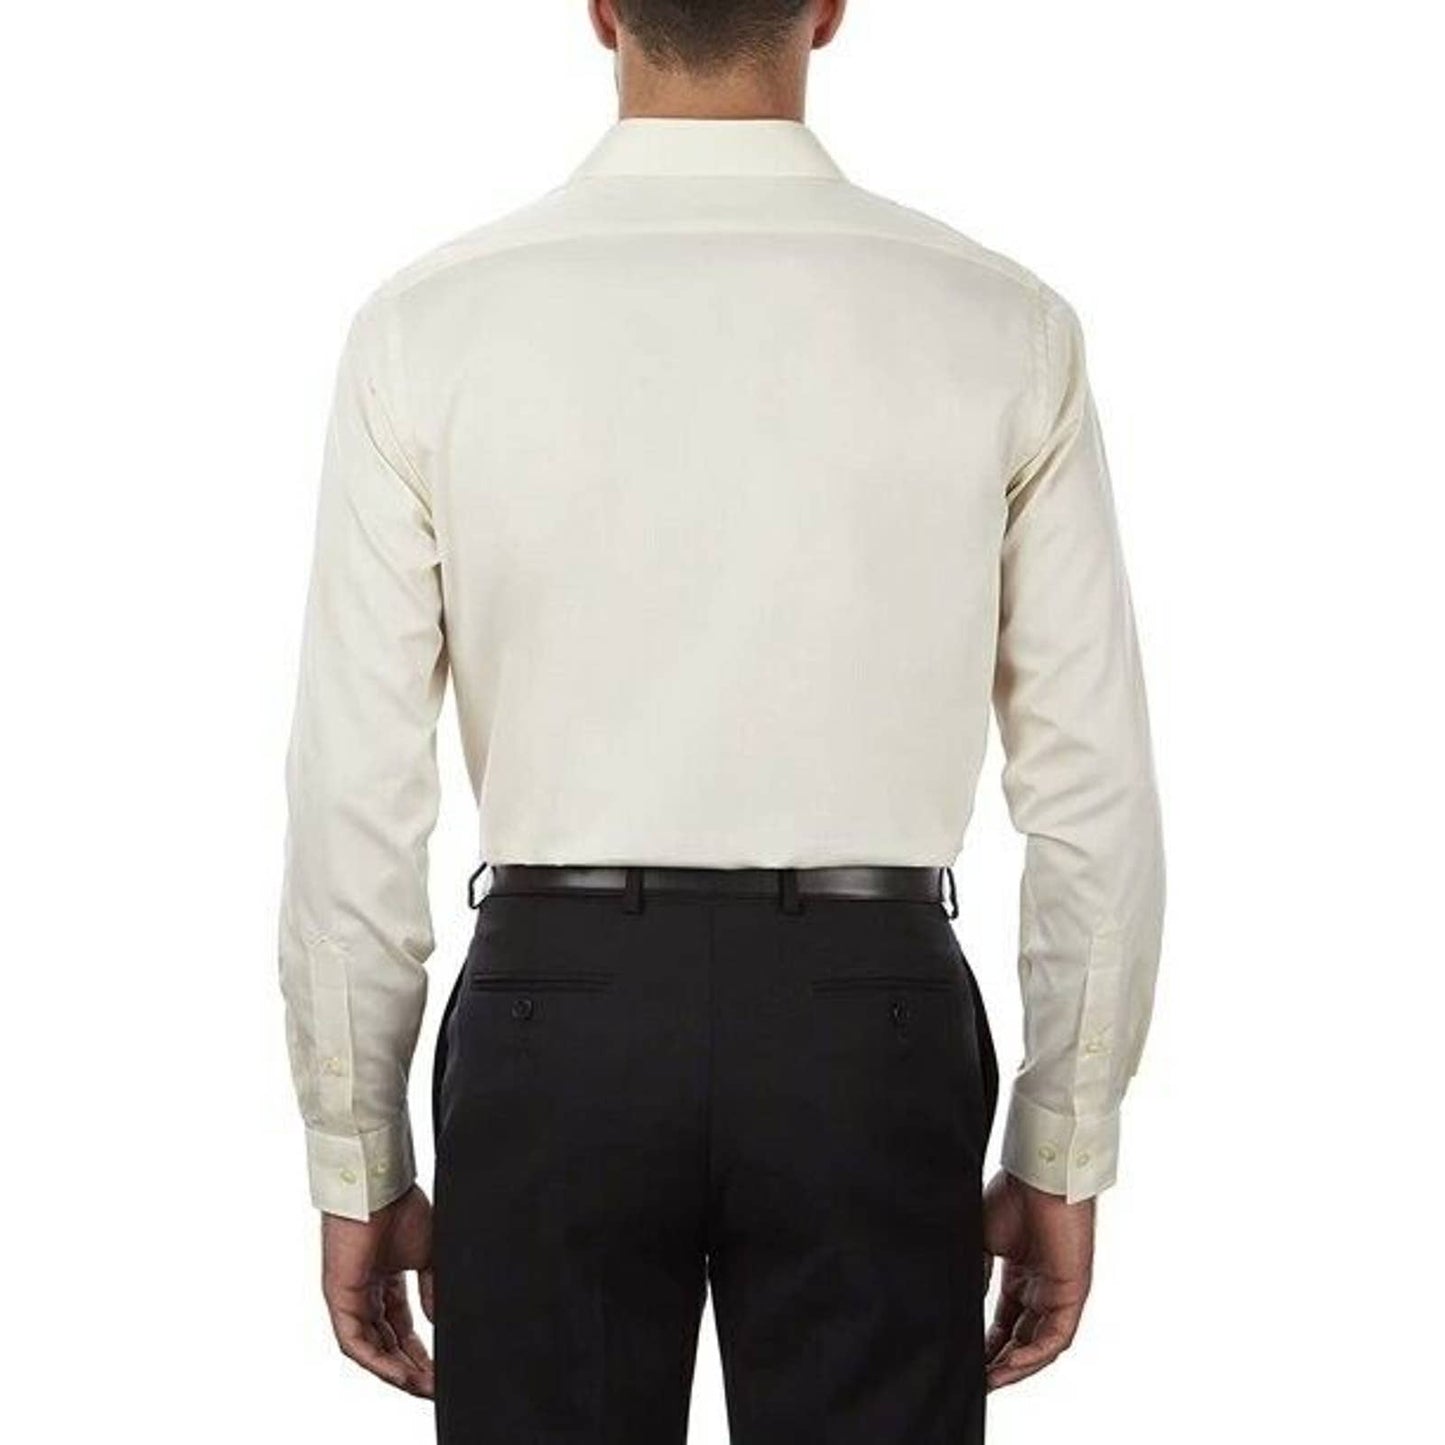 VAN HEUSEN MEN'S SATEEN CLASSIC DRESS SHIRT, 15, 34/35 CANVAS NWT